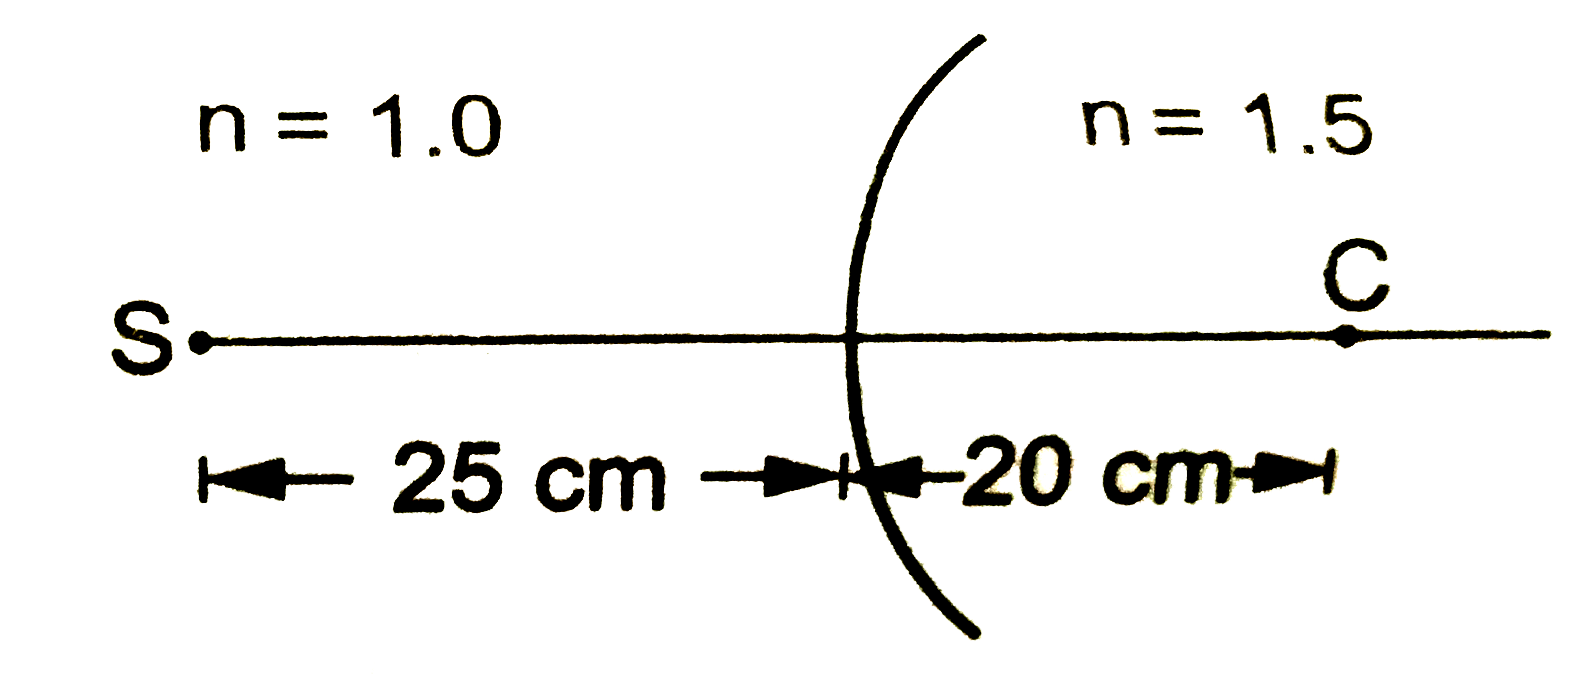 चित्र में दिखाई गई सतह के दाहिने काँच ( n = 1.5) तथा बाएँ हवा हैं । सतह की त्रिज्या 20 cm हैं तथा उससे 25 cm दूरी पर हवा में एक बिंदुस्त्रोत रखा हैं । प्रतिबिंब का स्थान बताएँ ।